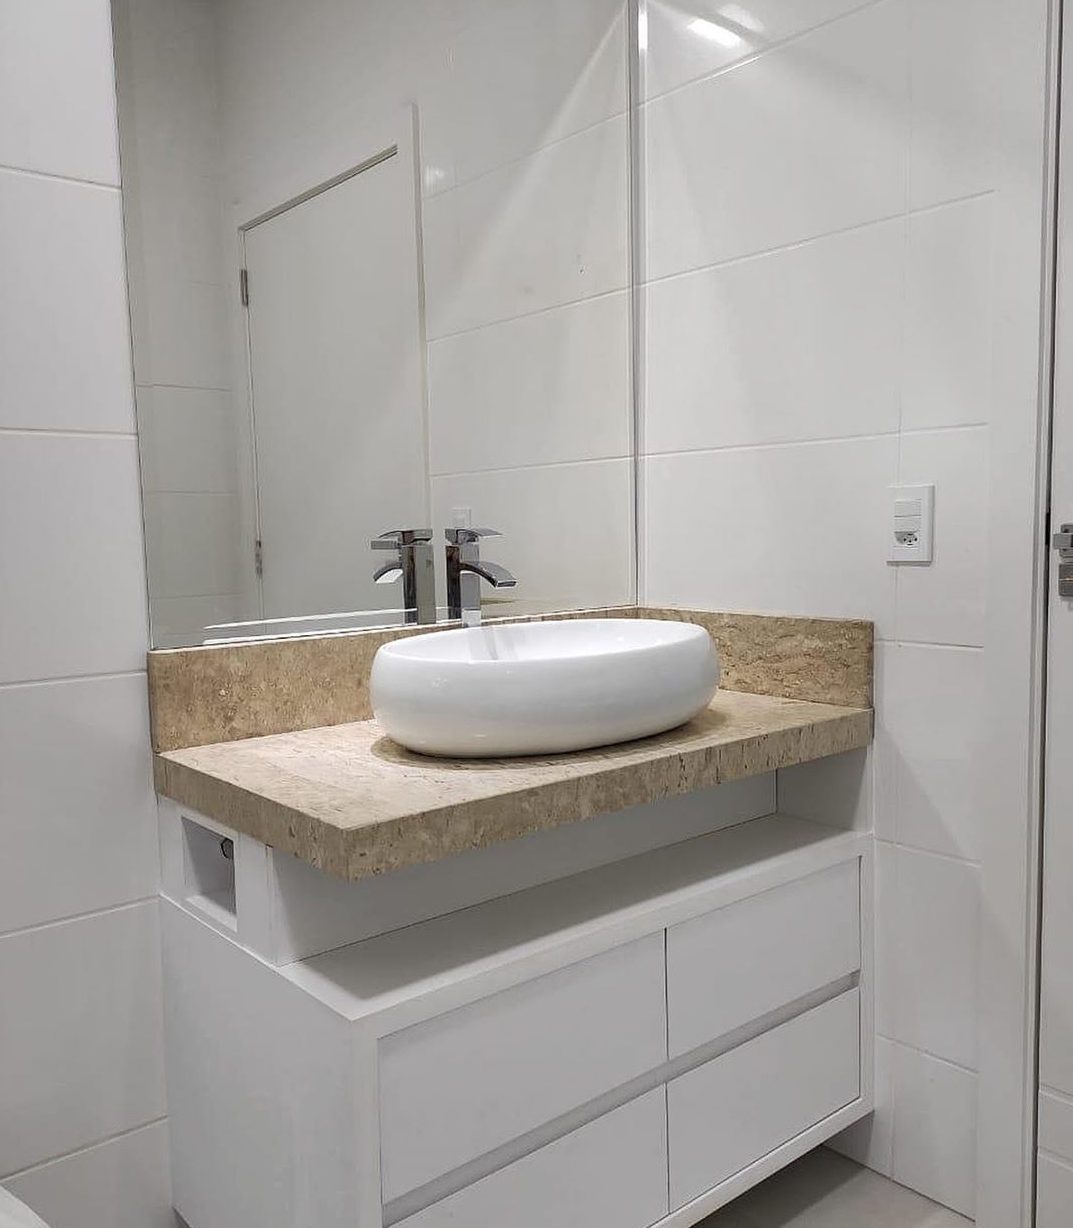 salle de bain toute blanche avec comptoir en marbre et baignoire qui se chevauchent